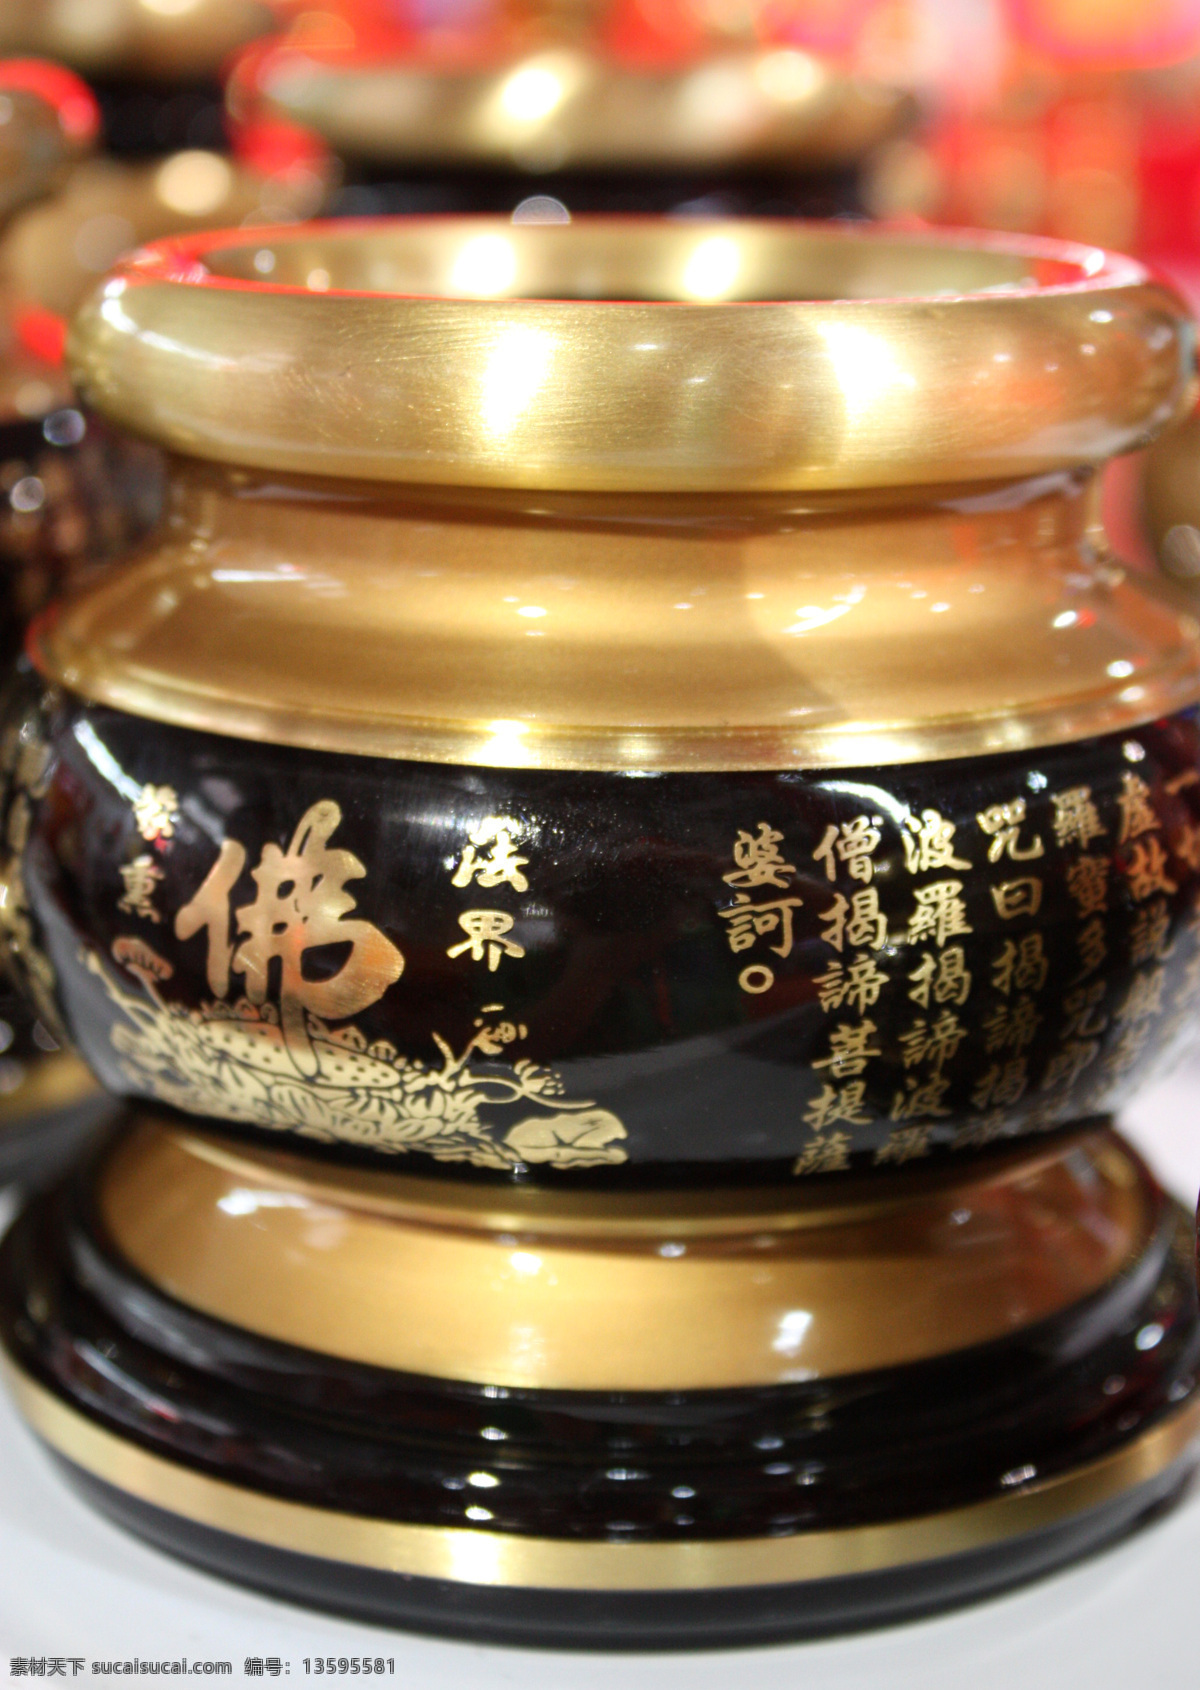 铜器香炉 铜器 香炉 佛 法界蒙熏 佛教 铜雕艺术 传统文化 书法 精美铜器 佛经 文化艺术